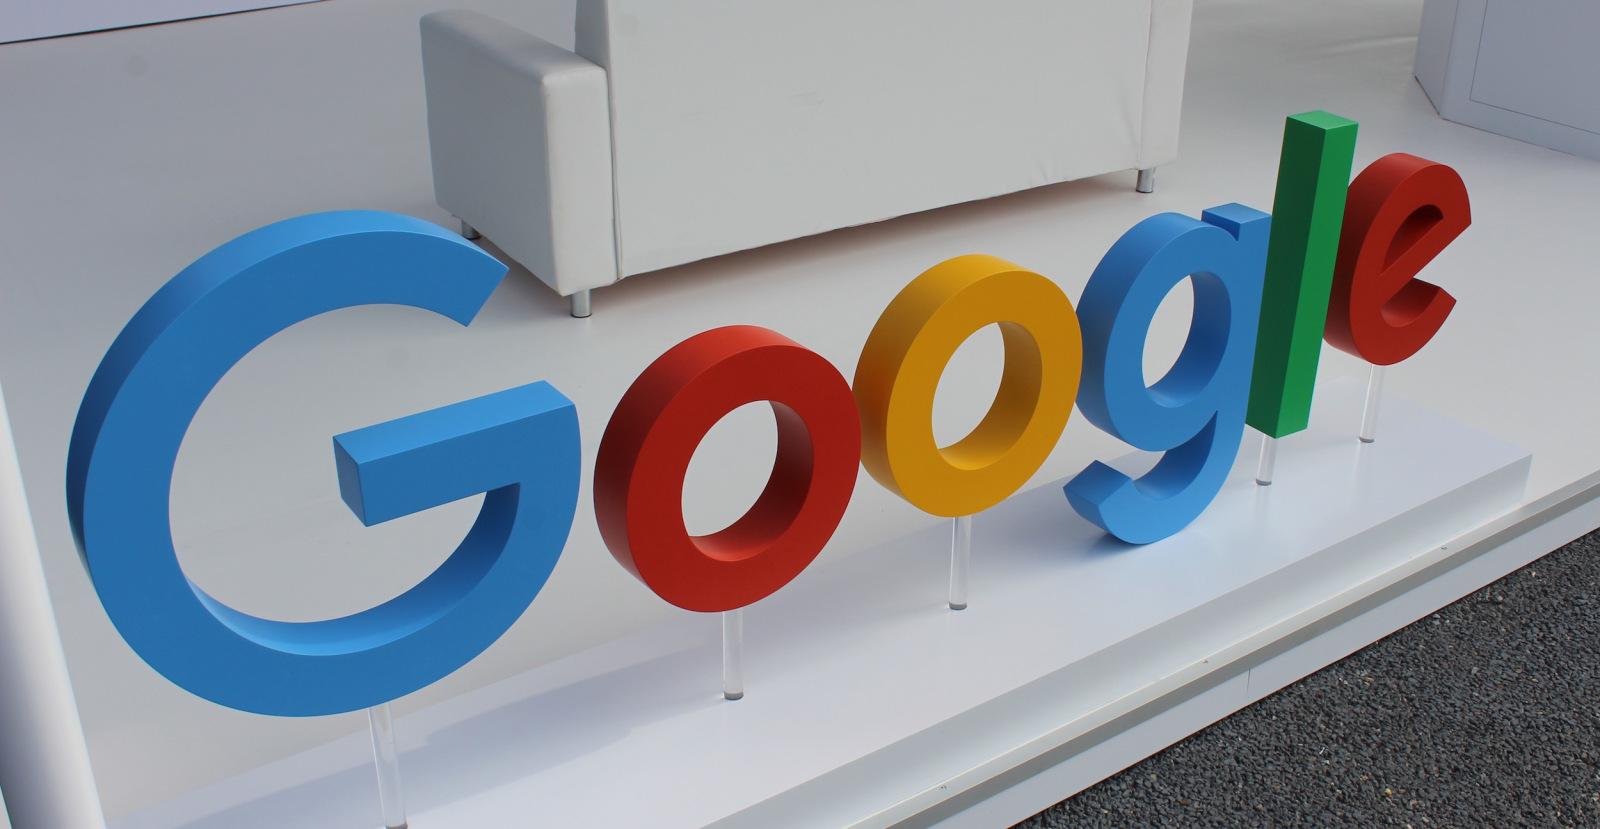 Компания Google запустила собственную "умную" ленту